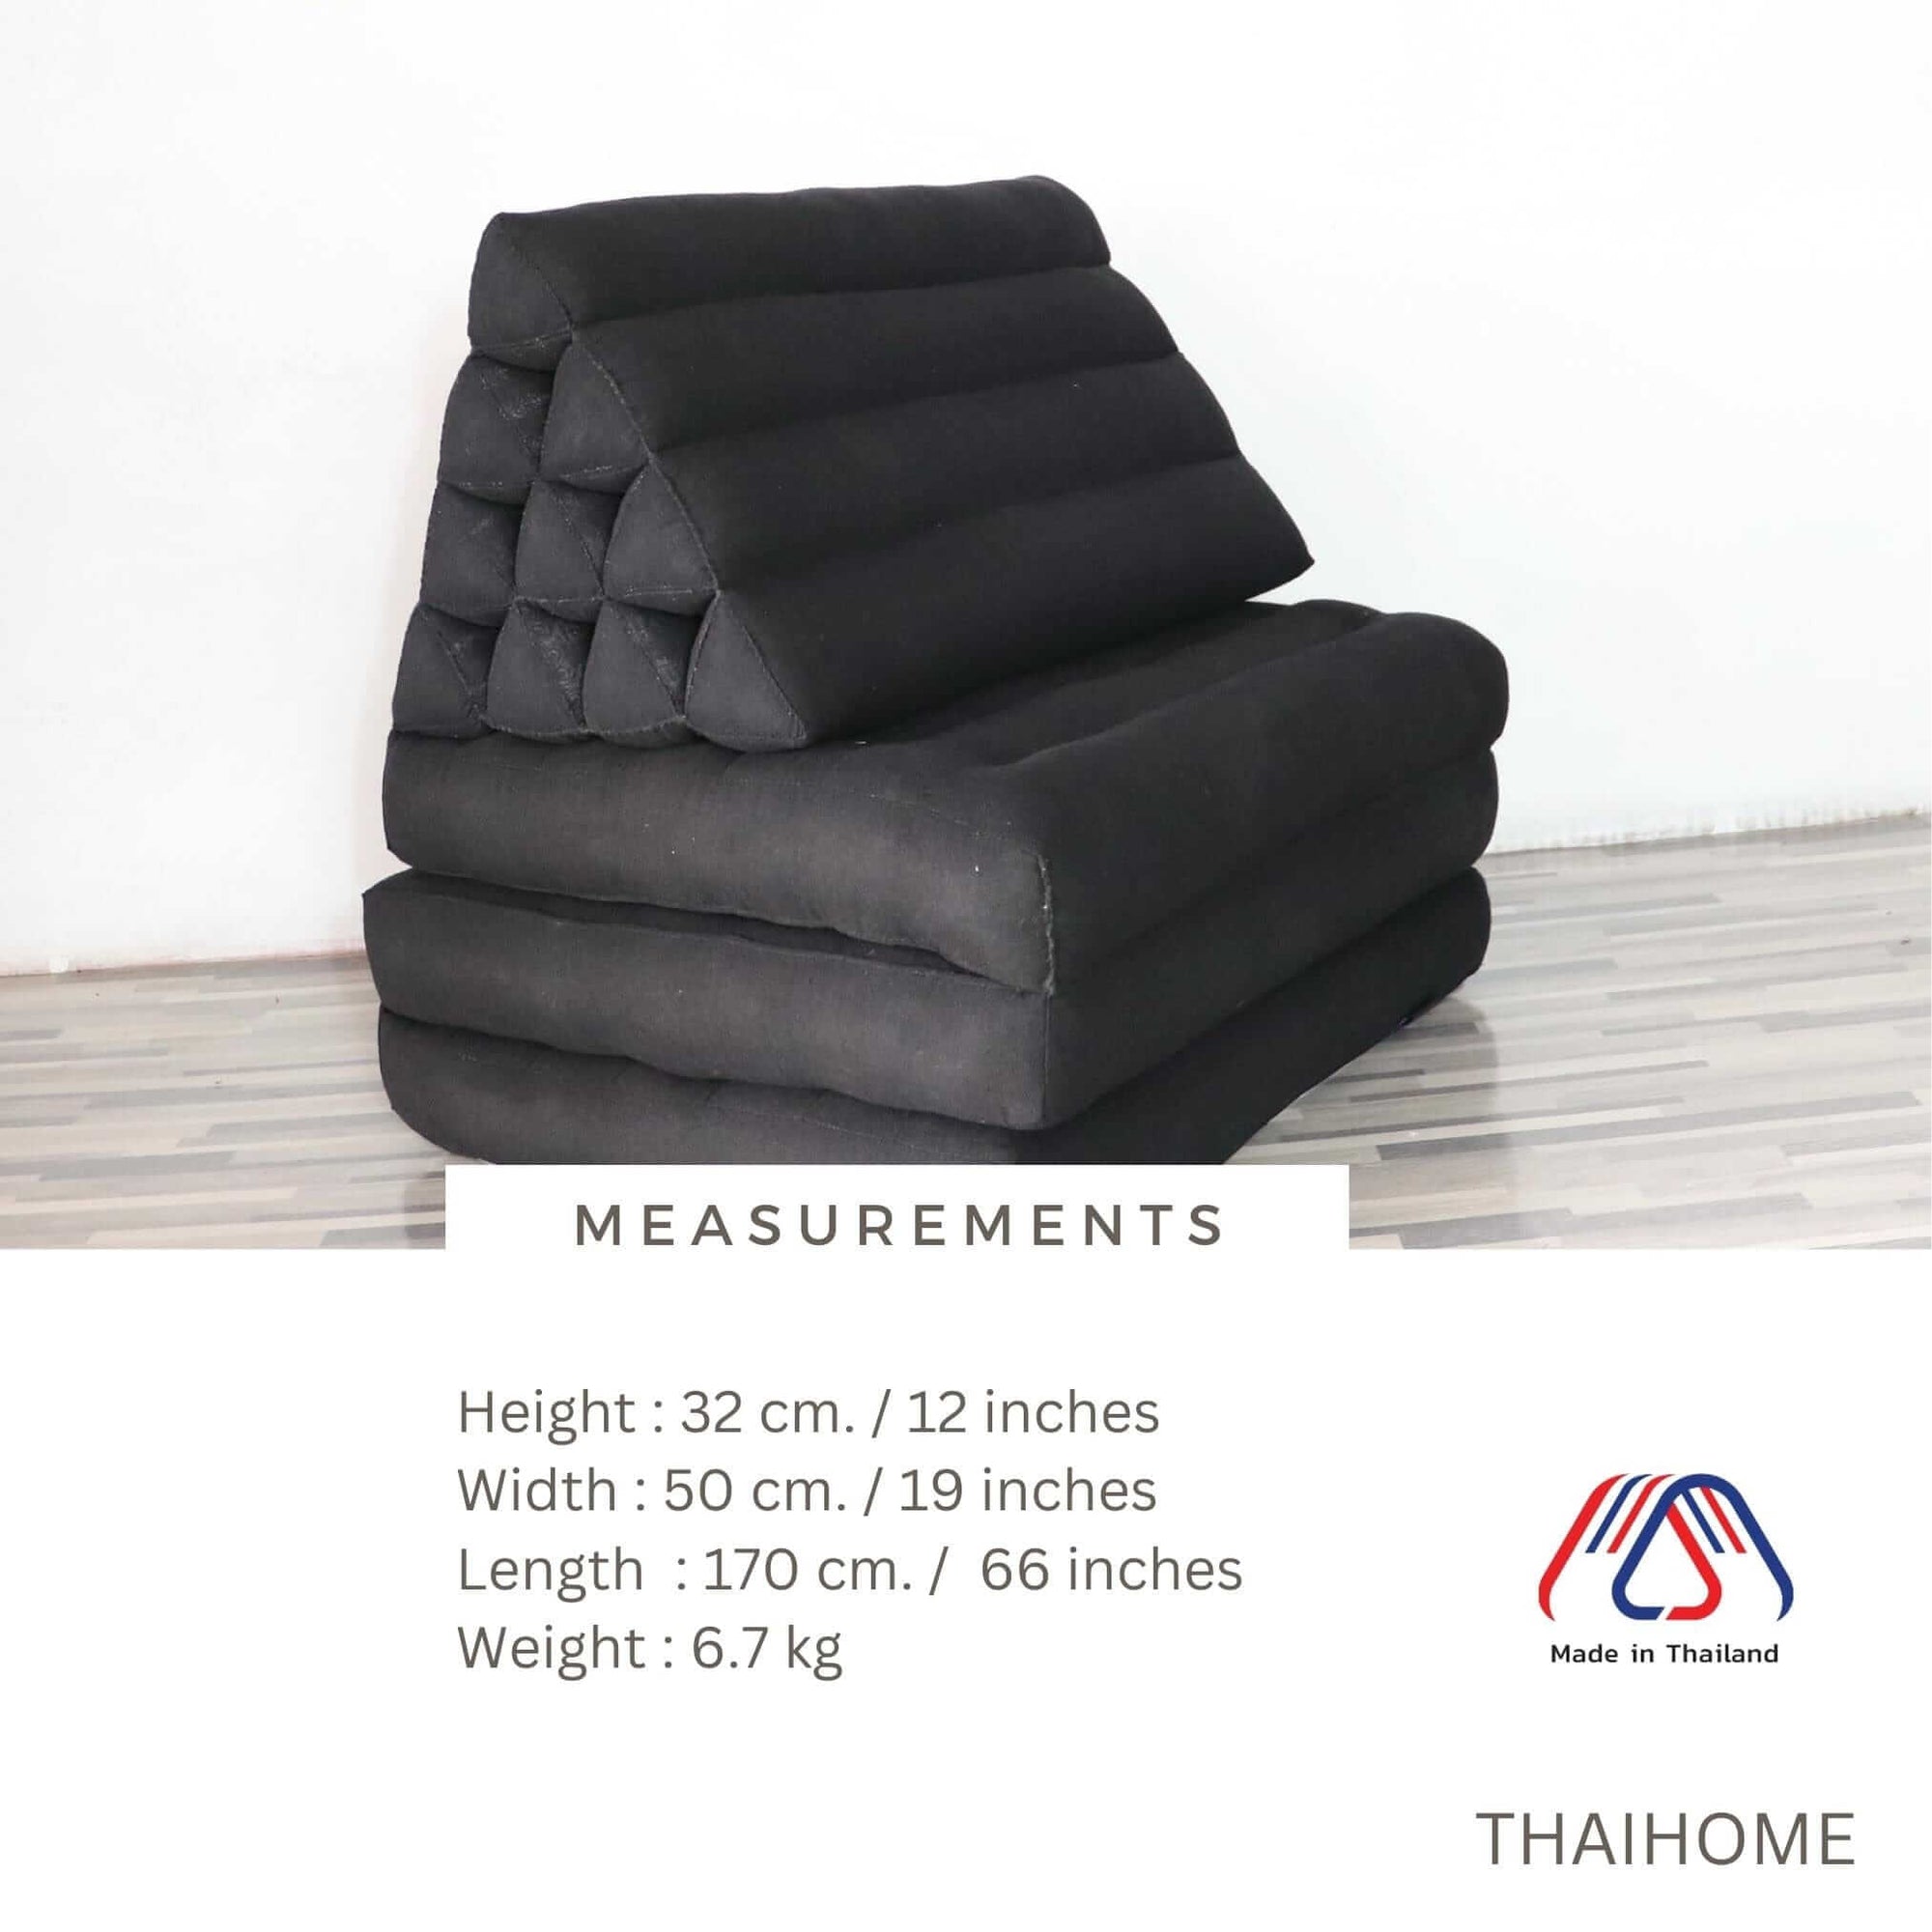 THAIHOME 3 Fold Cushion Nannette - Thai Triangle Cushion (3 Fold - 19 x 12 Inches - Black)